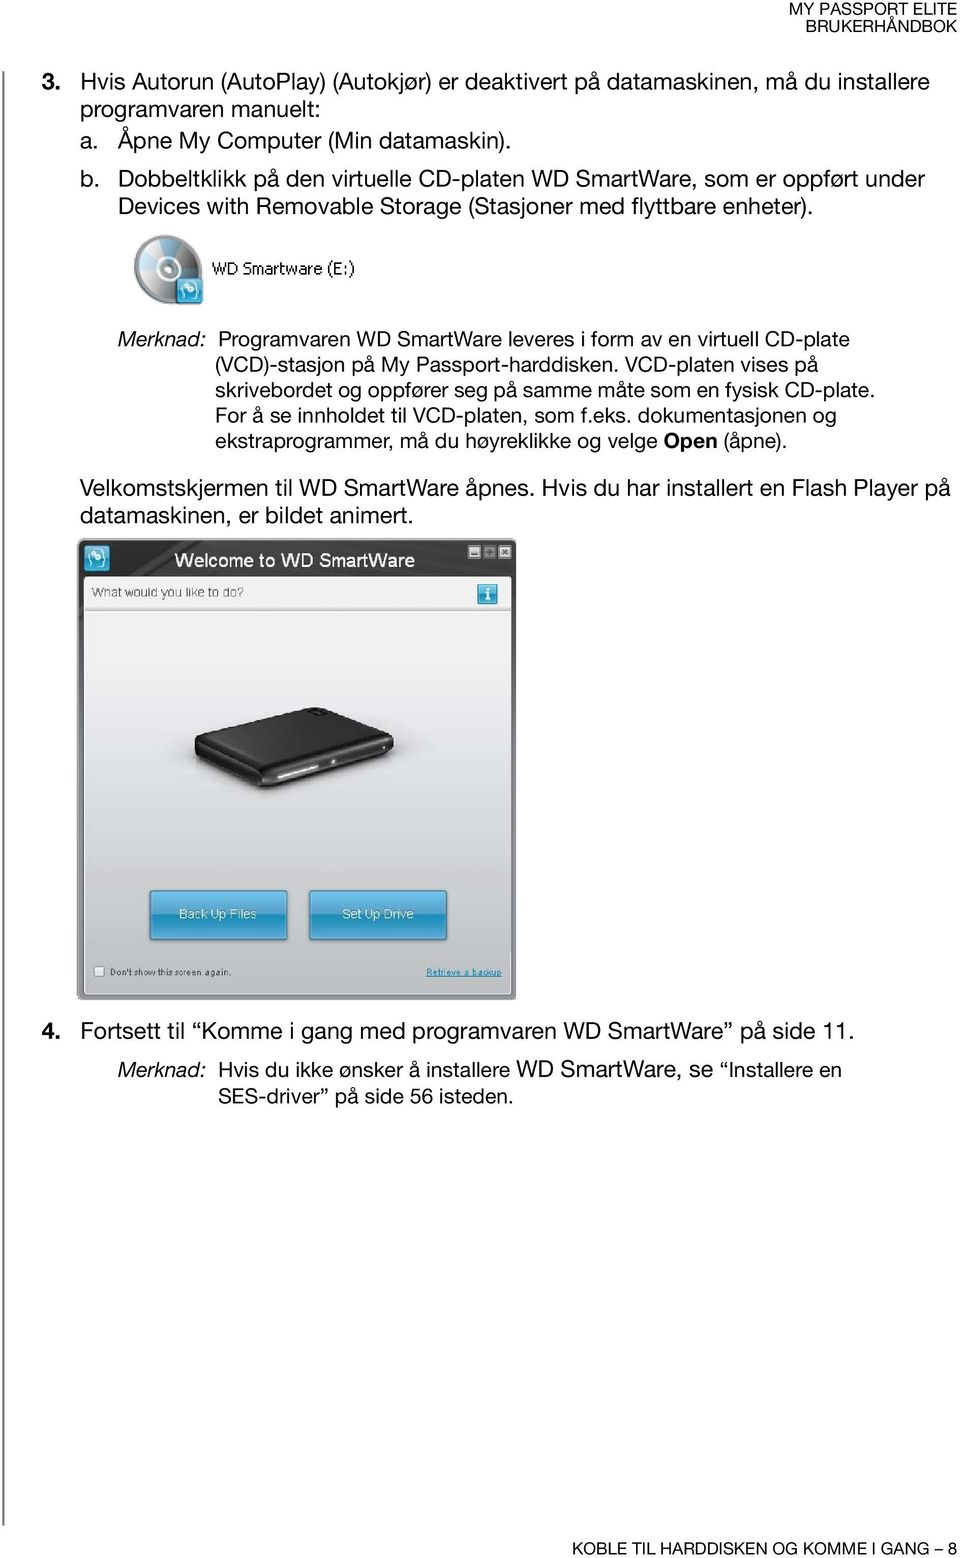 Merknad: Programvaren WD SmartWare leveres i form av en virtuell CD-plate (VCD)-stasjon på My Passport-harddisken.